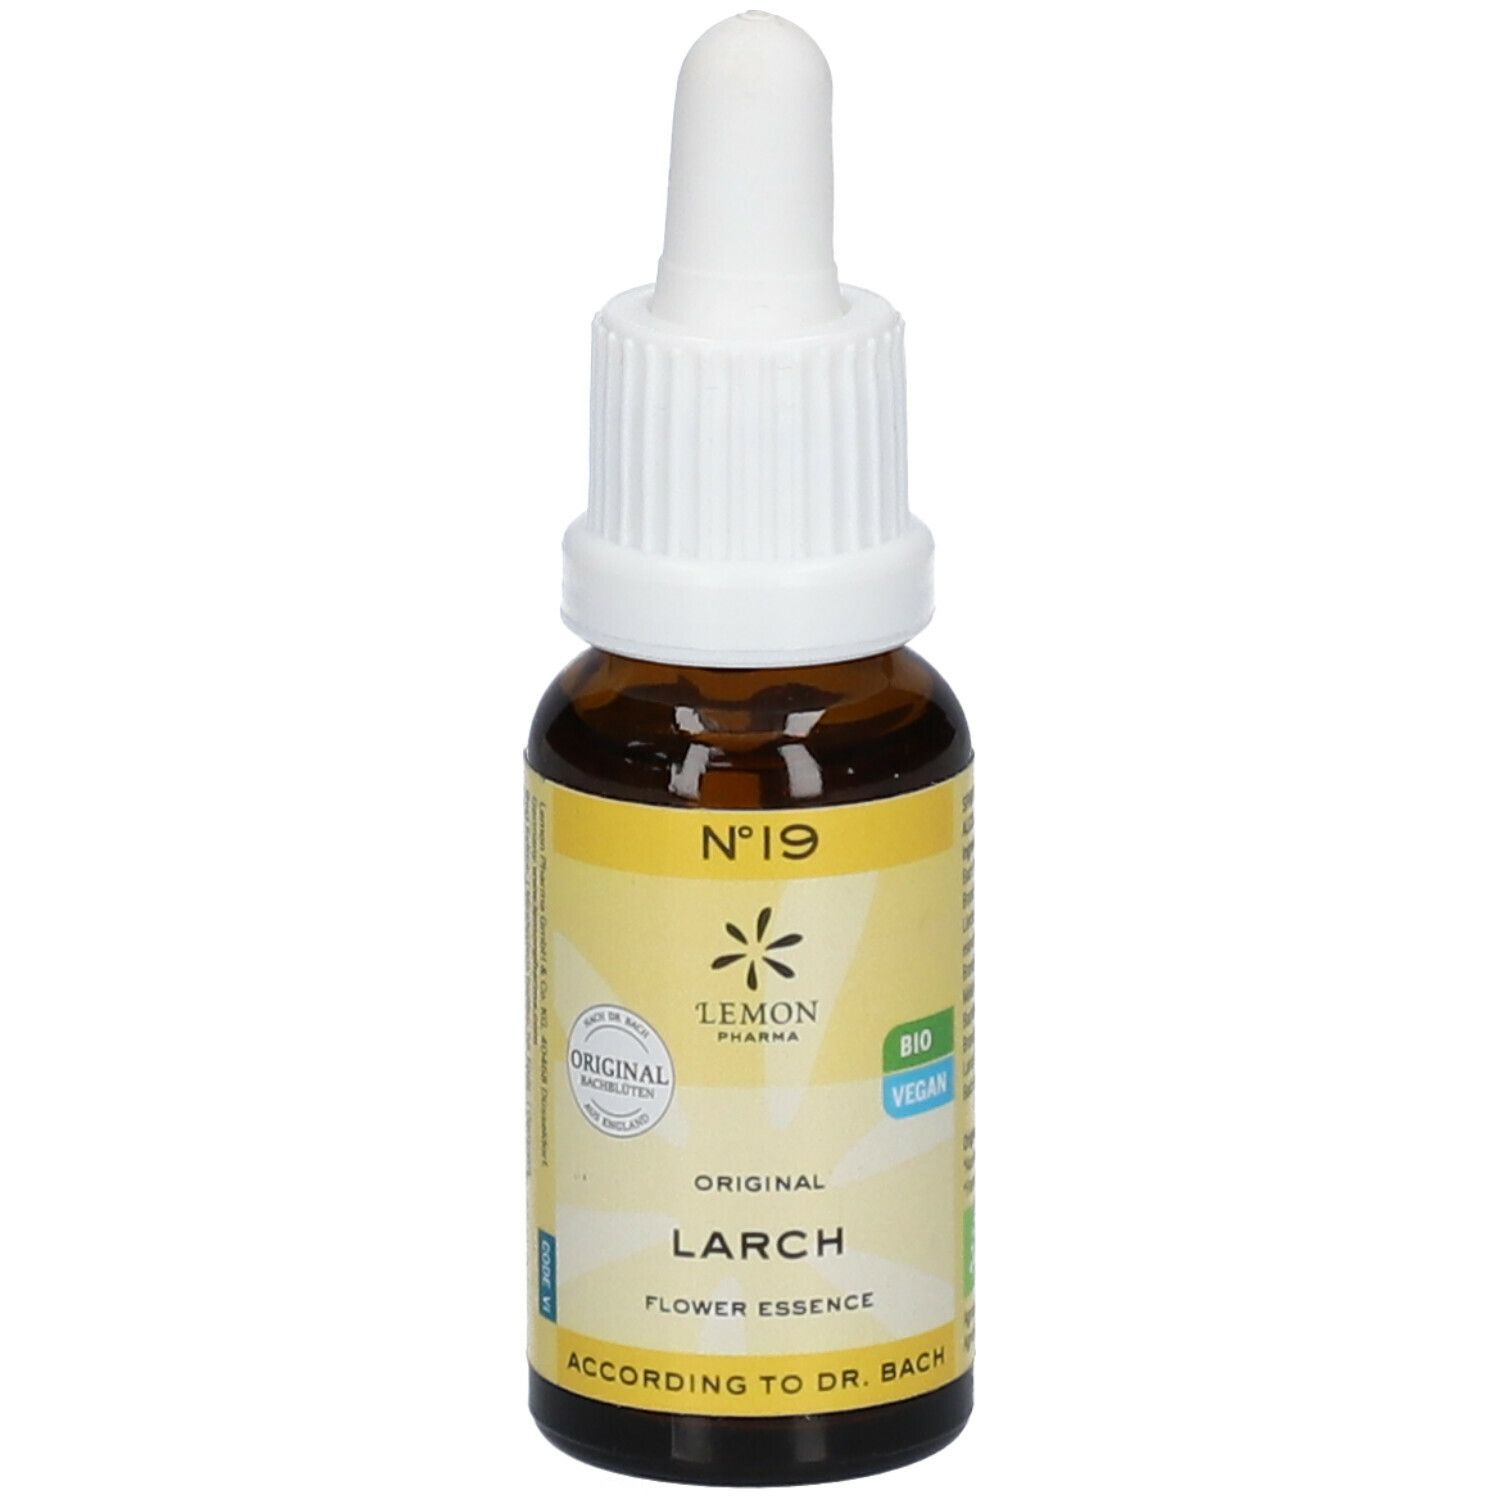 Lemon Pharma Fleurs de Bach N°19 Larch